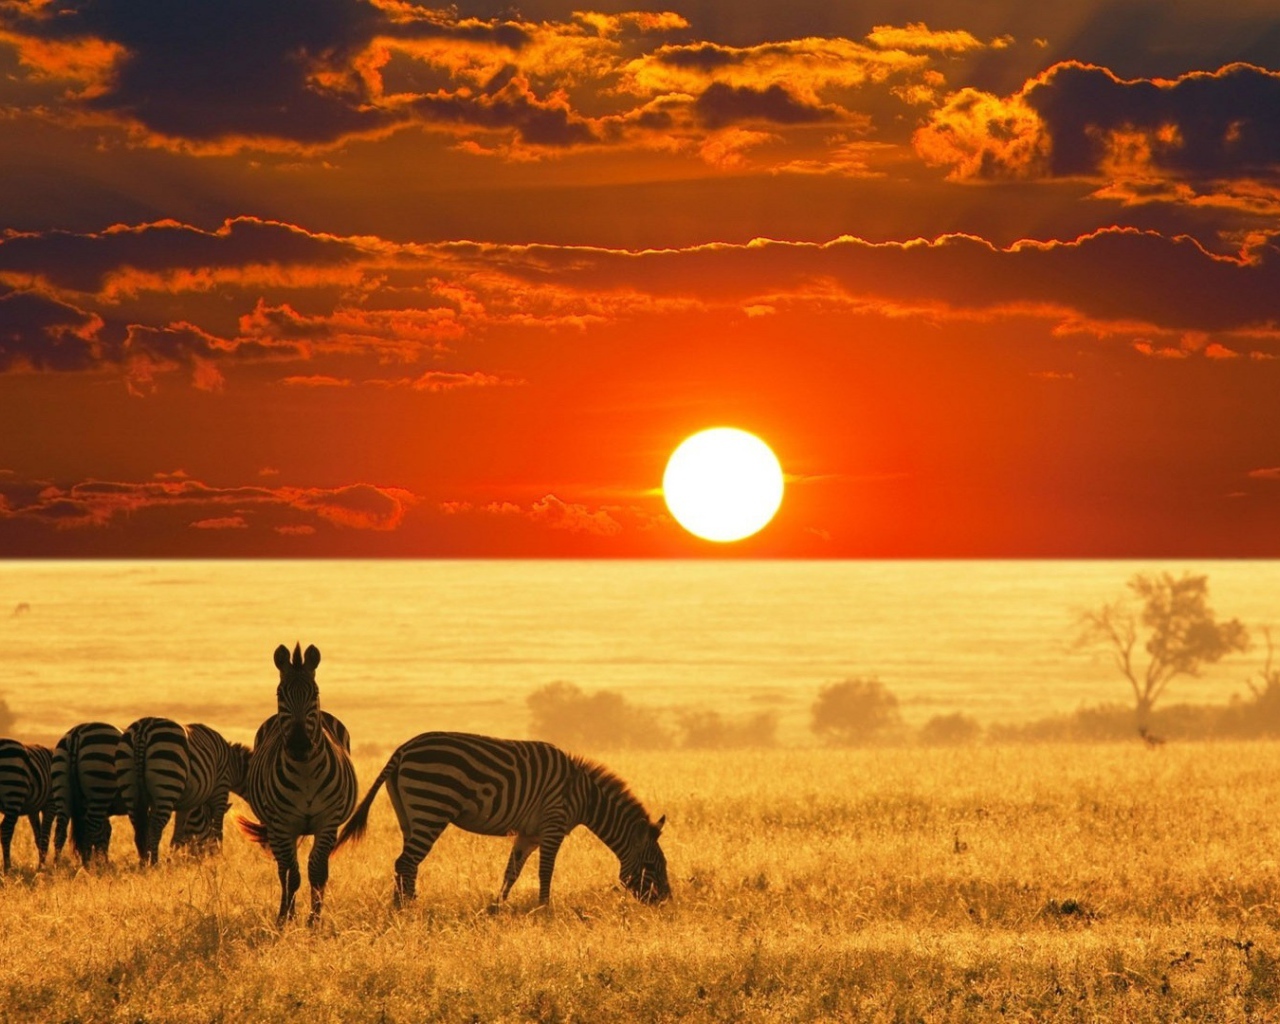 Зебры в поле на закате, Африка